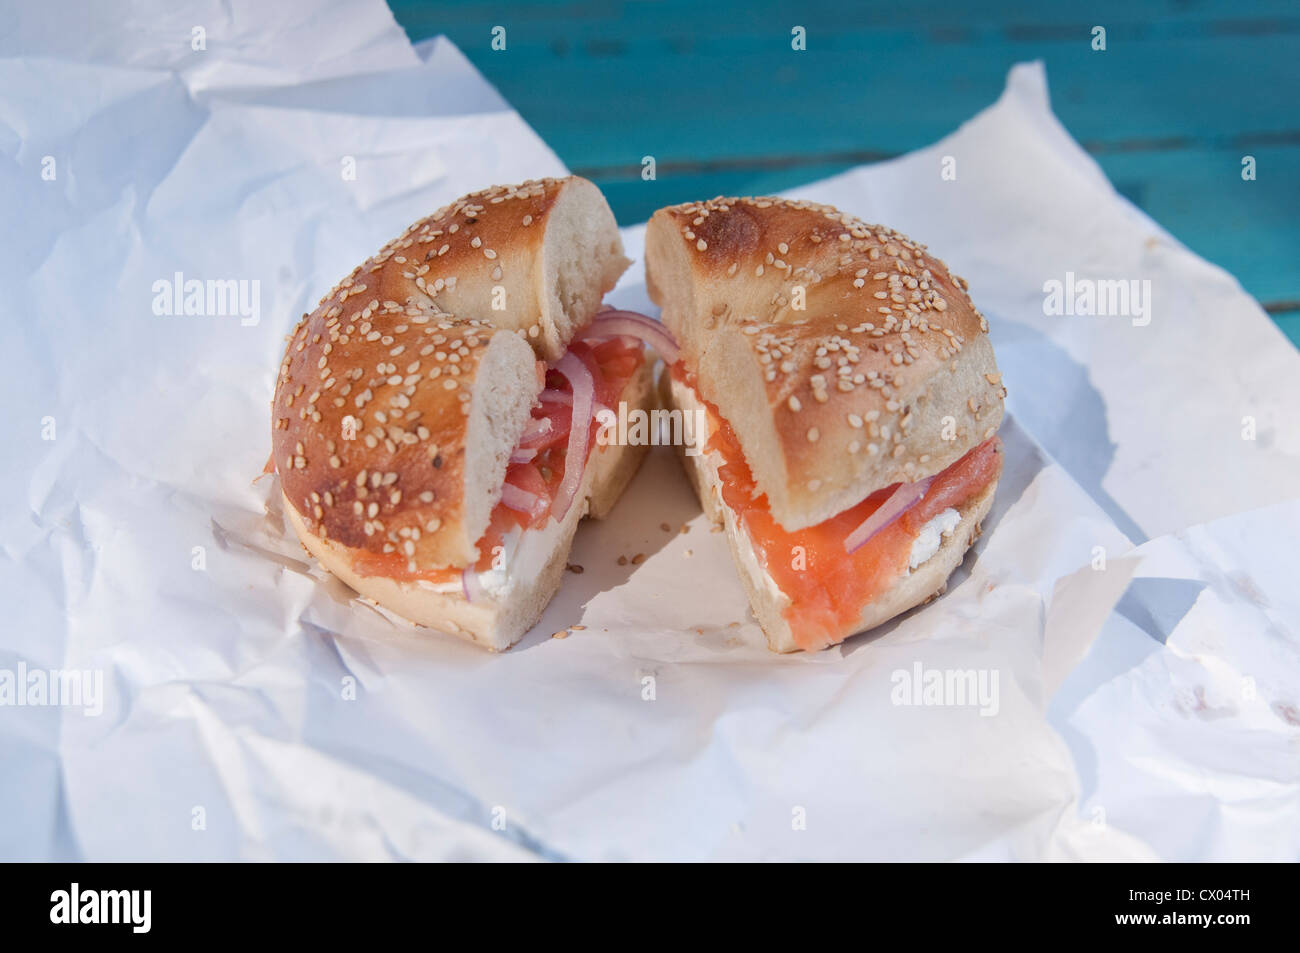 Una semilla de ajonjolí bagel con salmón ahumado (LOX), crema de queso, cebolla y tomate, sentado en un envoltorio de papel, a partir de la primavera de árbol Bagels en Englewood, Nueva Jersey. Foto de stock